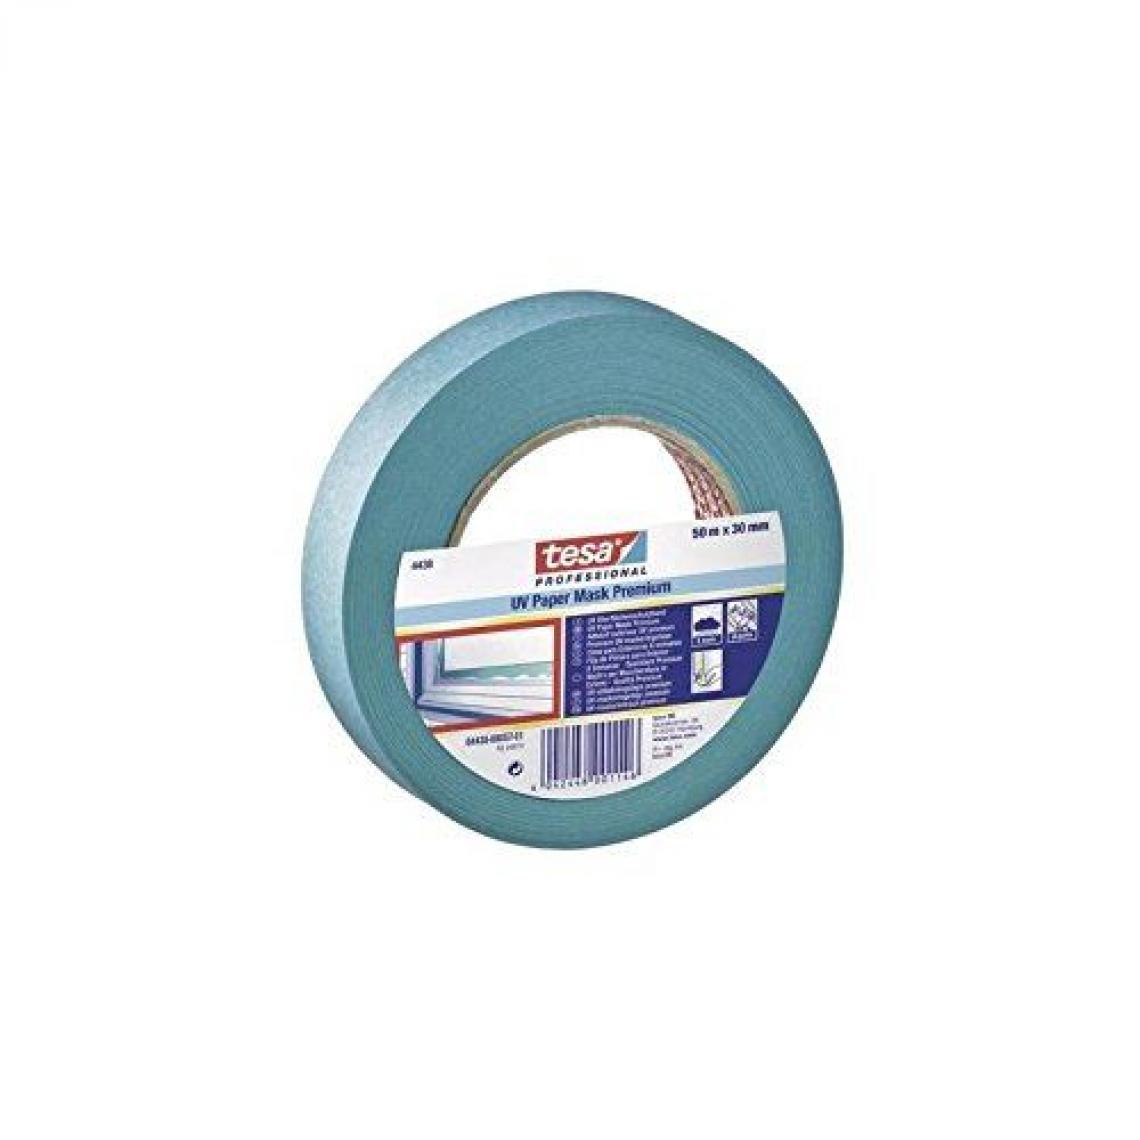 Inconnu - Tesa tesakrepp® Ruban résistant aux rayons UV pour protection (L x B) 50 m x 30 mm Bleu 4438 – 17 – 00 contenuâ€¯: 1 pièce - Colle & adhésif